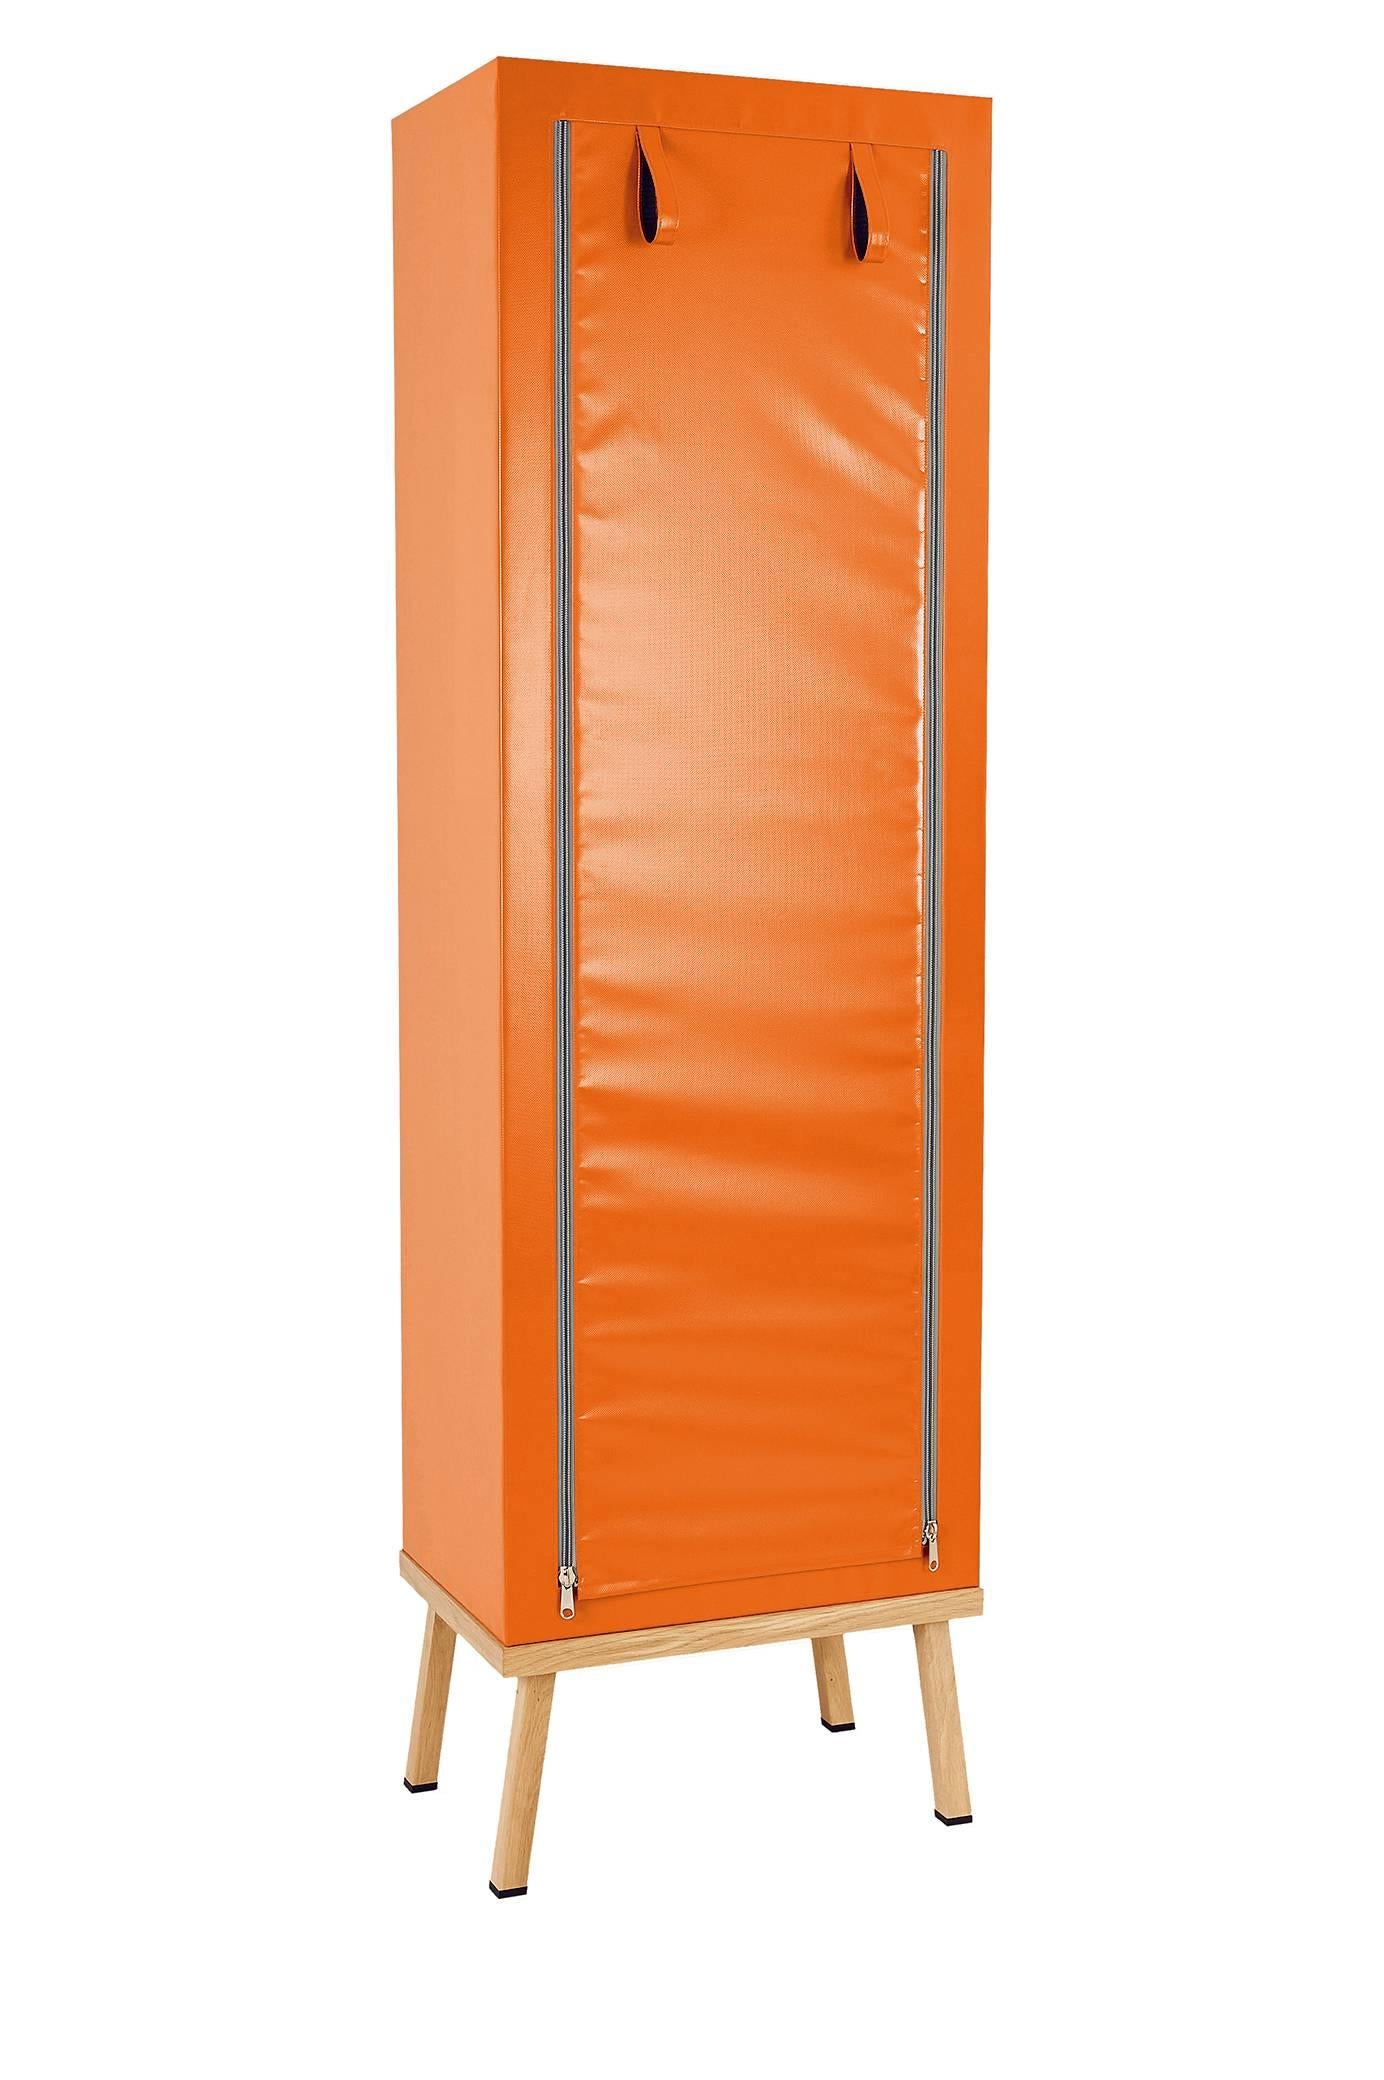 Visser and Meijwaard Truecolors cabinet in orange PVC cloth with zipper opening

Designed by Visser en Meijwaard 
Contemporary, Netherlands, 2015
PVC cloth, oakwood, rubber
Measure: H 78.75 in, W 23.75 in, D 15.75 in 

Lead time 8-10 weeks.